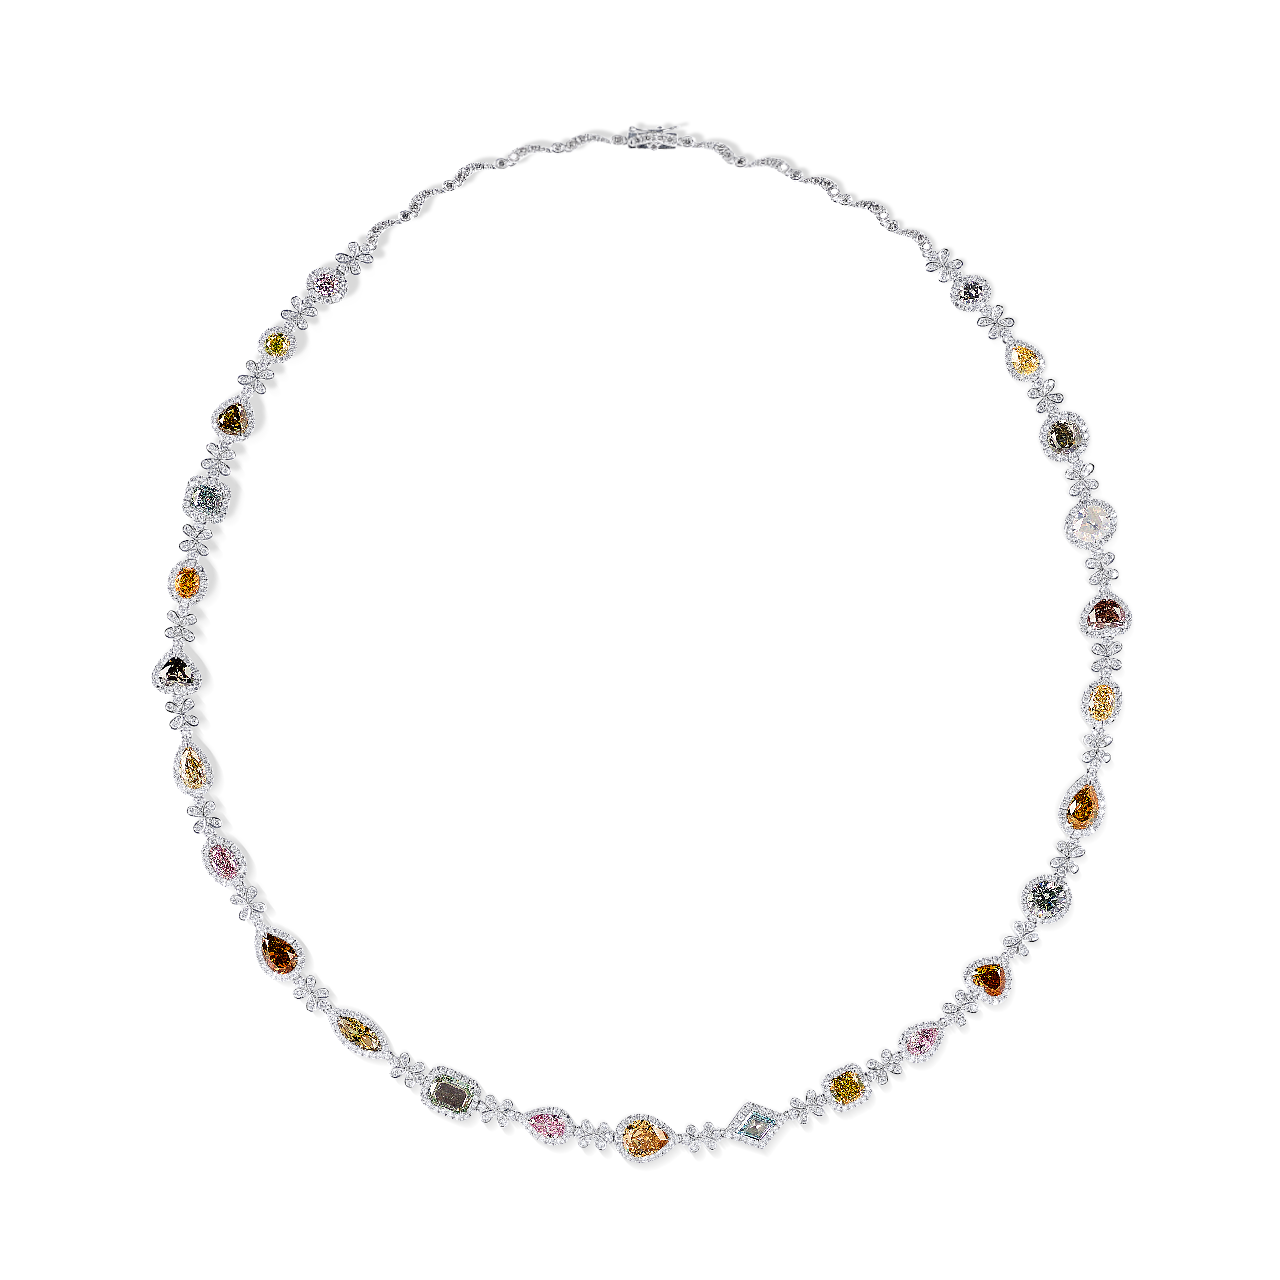 GIA 19.53克拉 頂級奢華彩鑽套鍊
Multi-Colored Diamond and Diamond Necklace